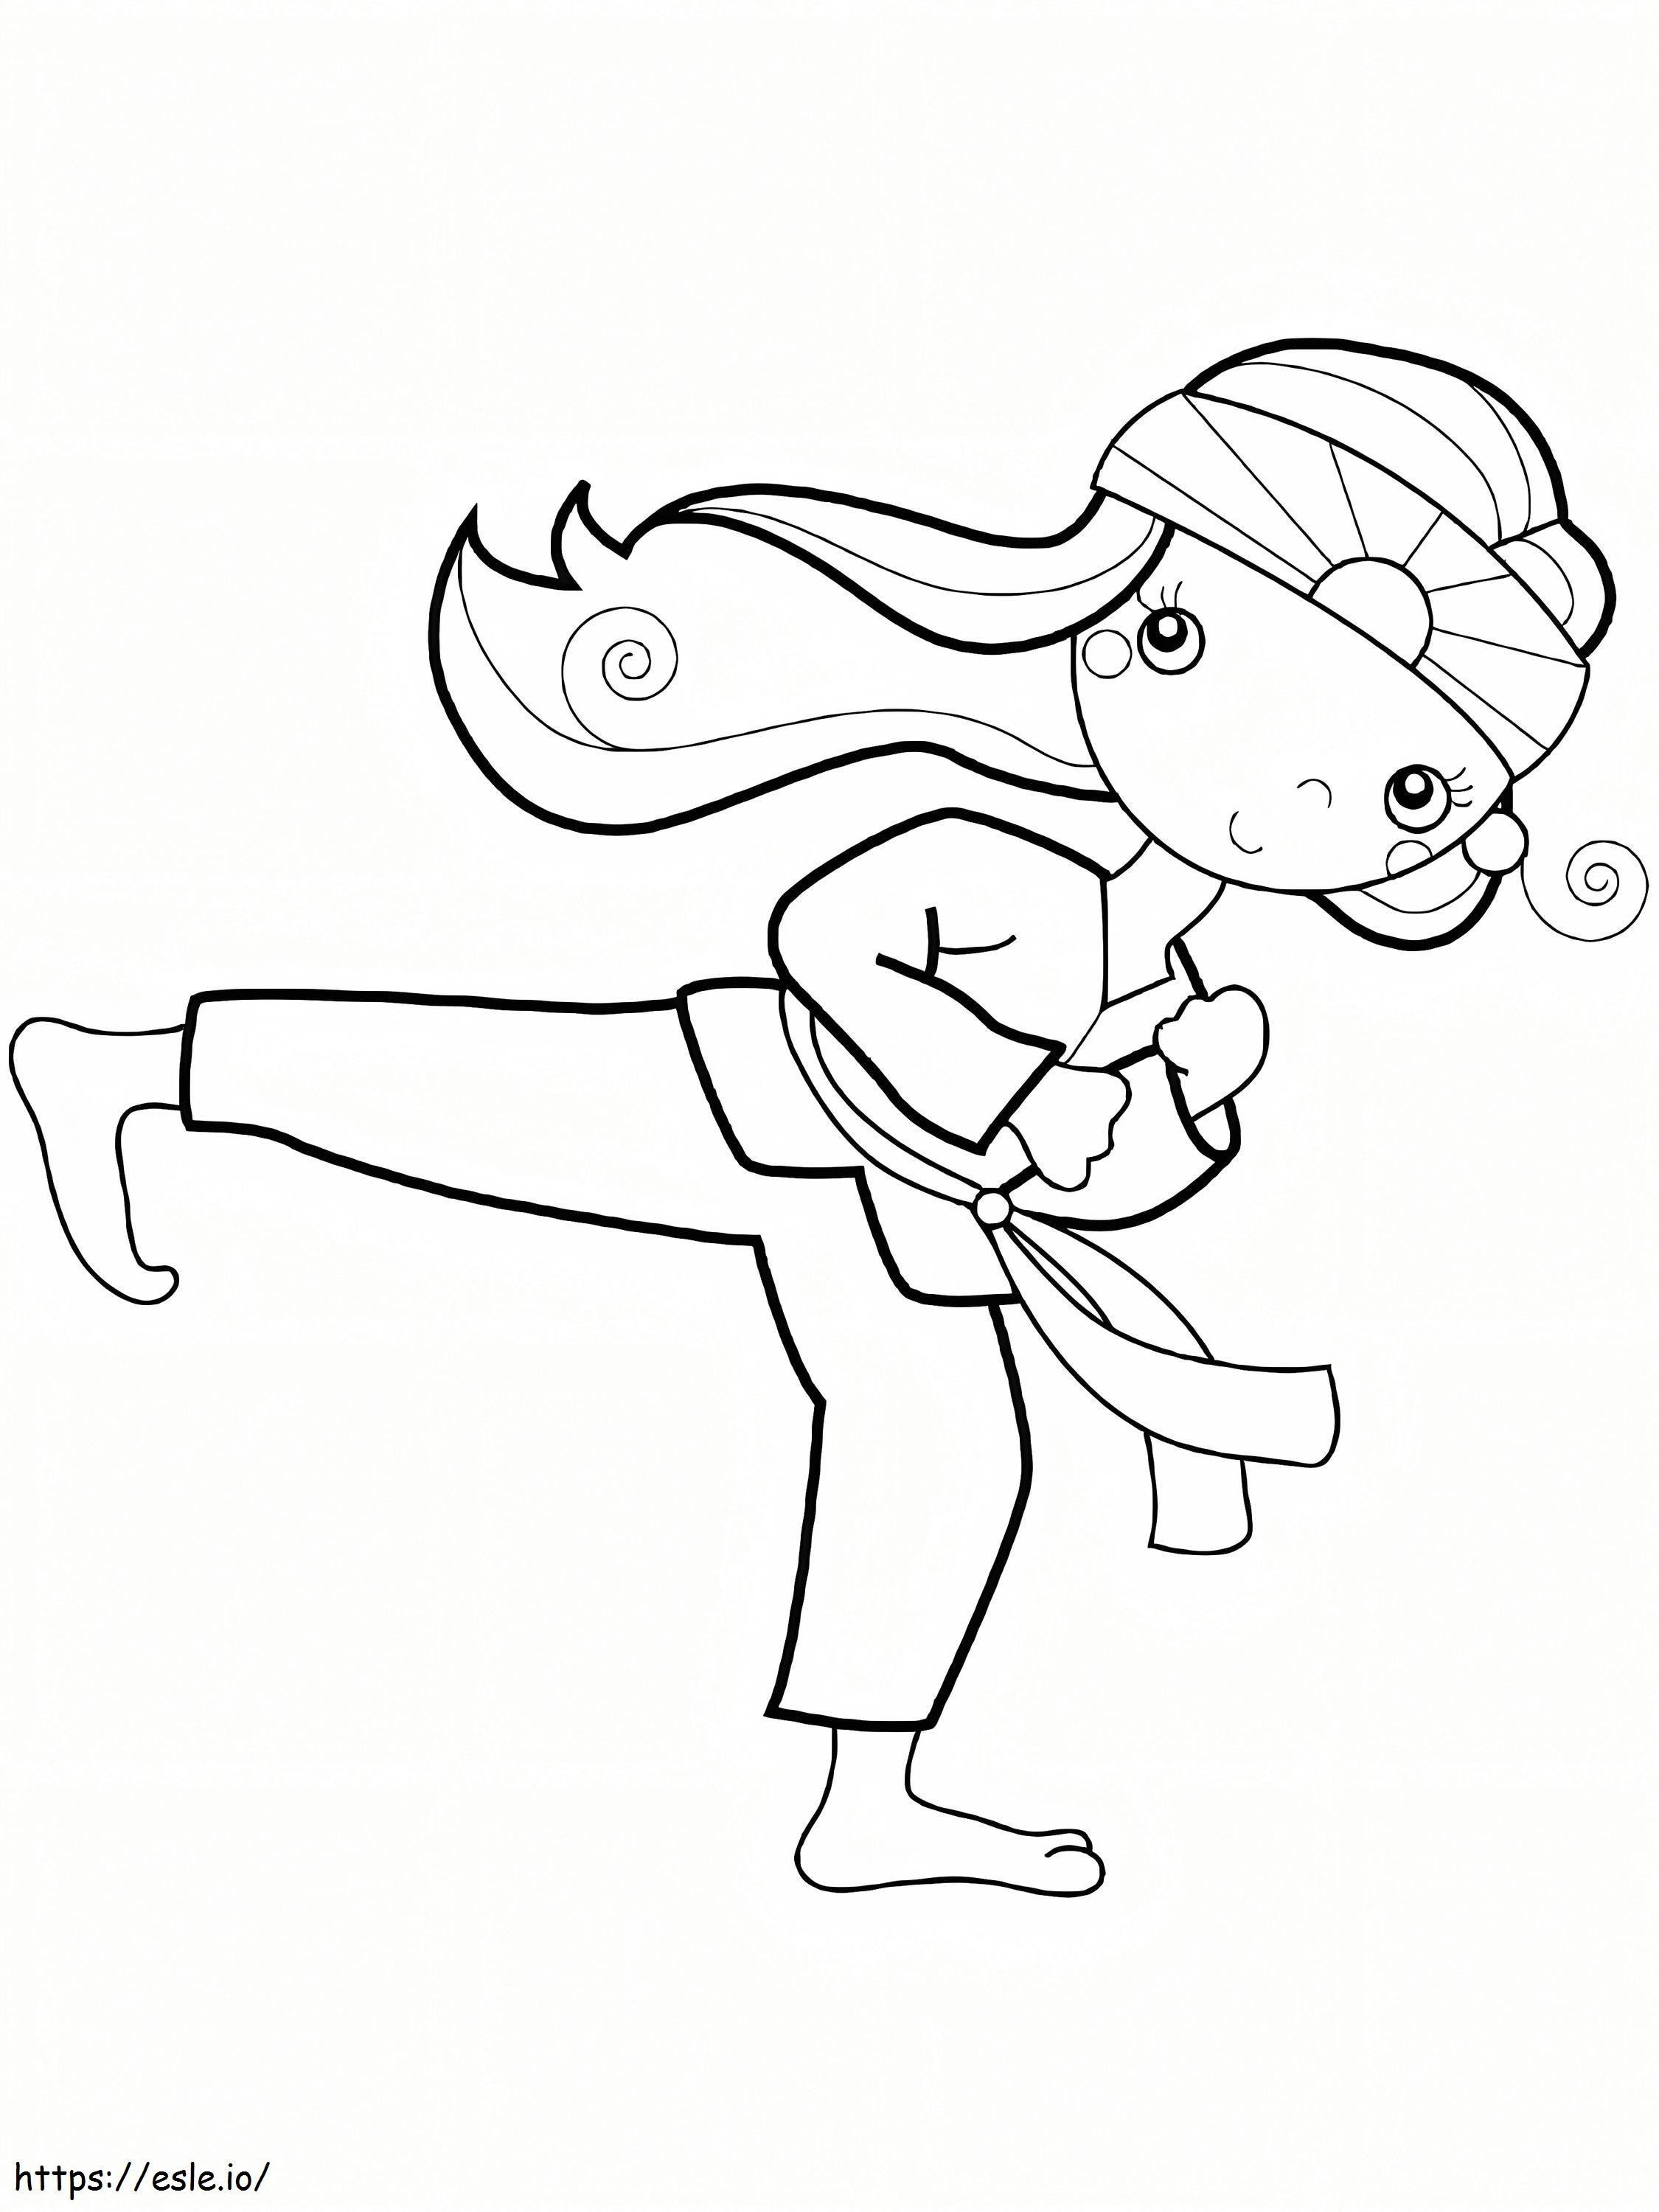 Sevimli Karate Kızı boyama